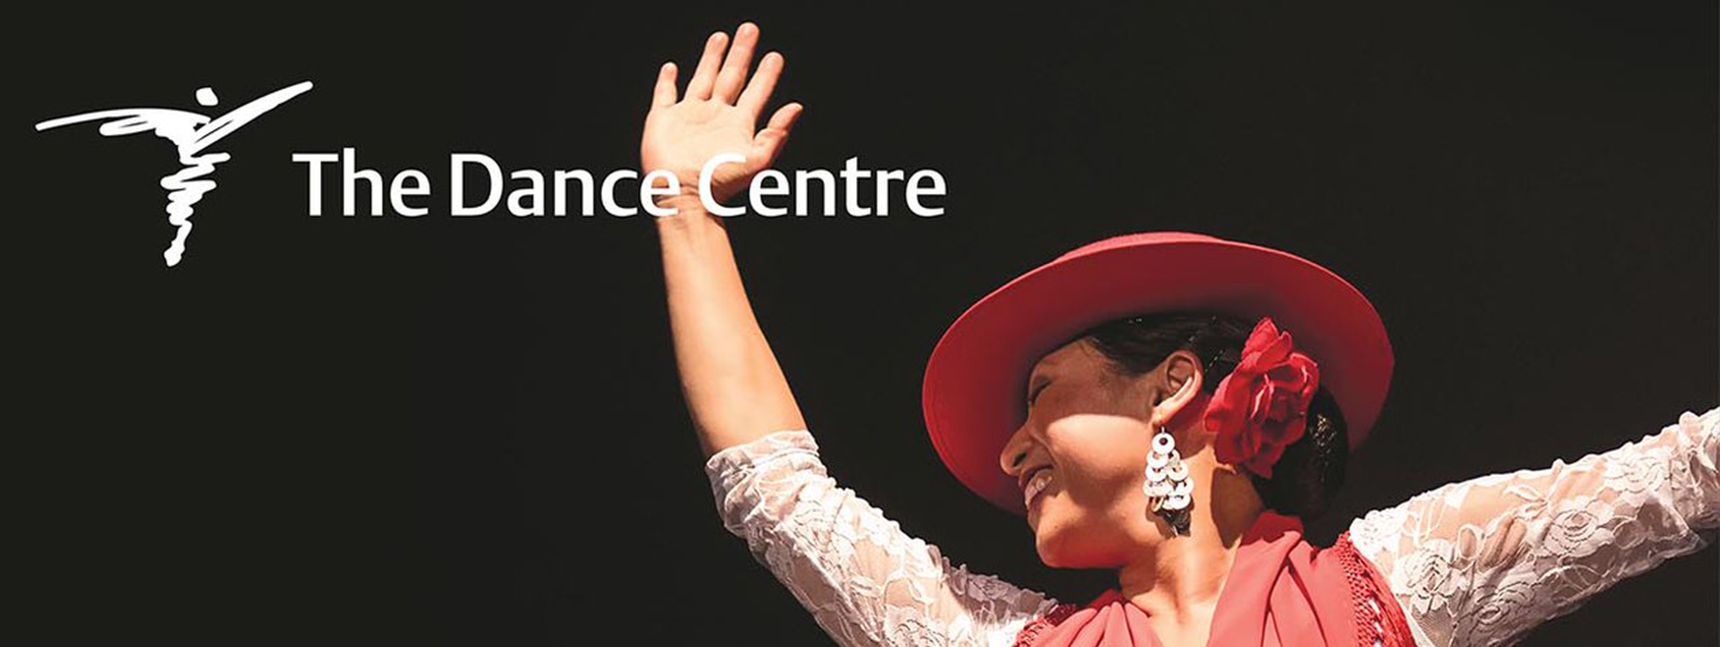 Dance-Centre-Open-House-September-17